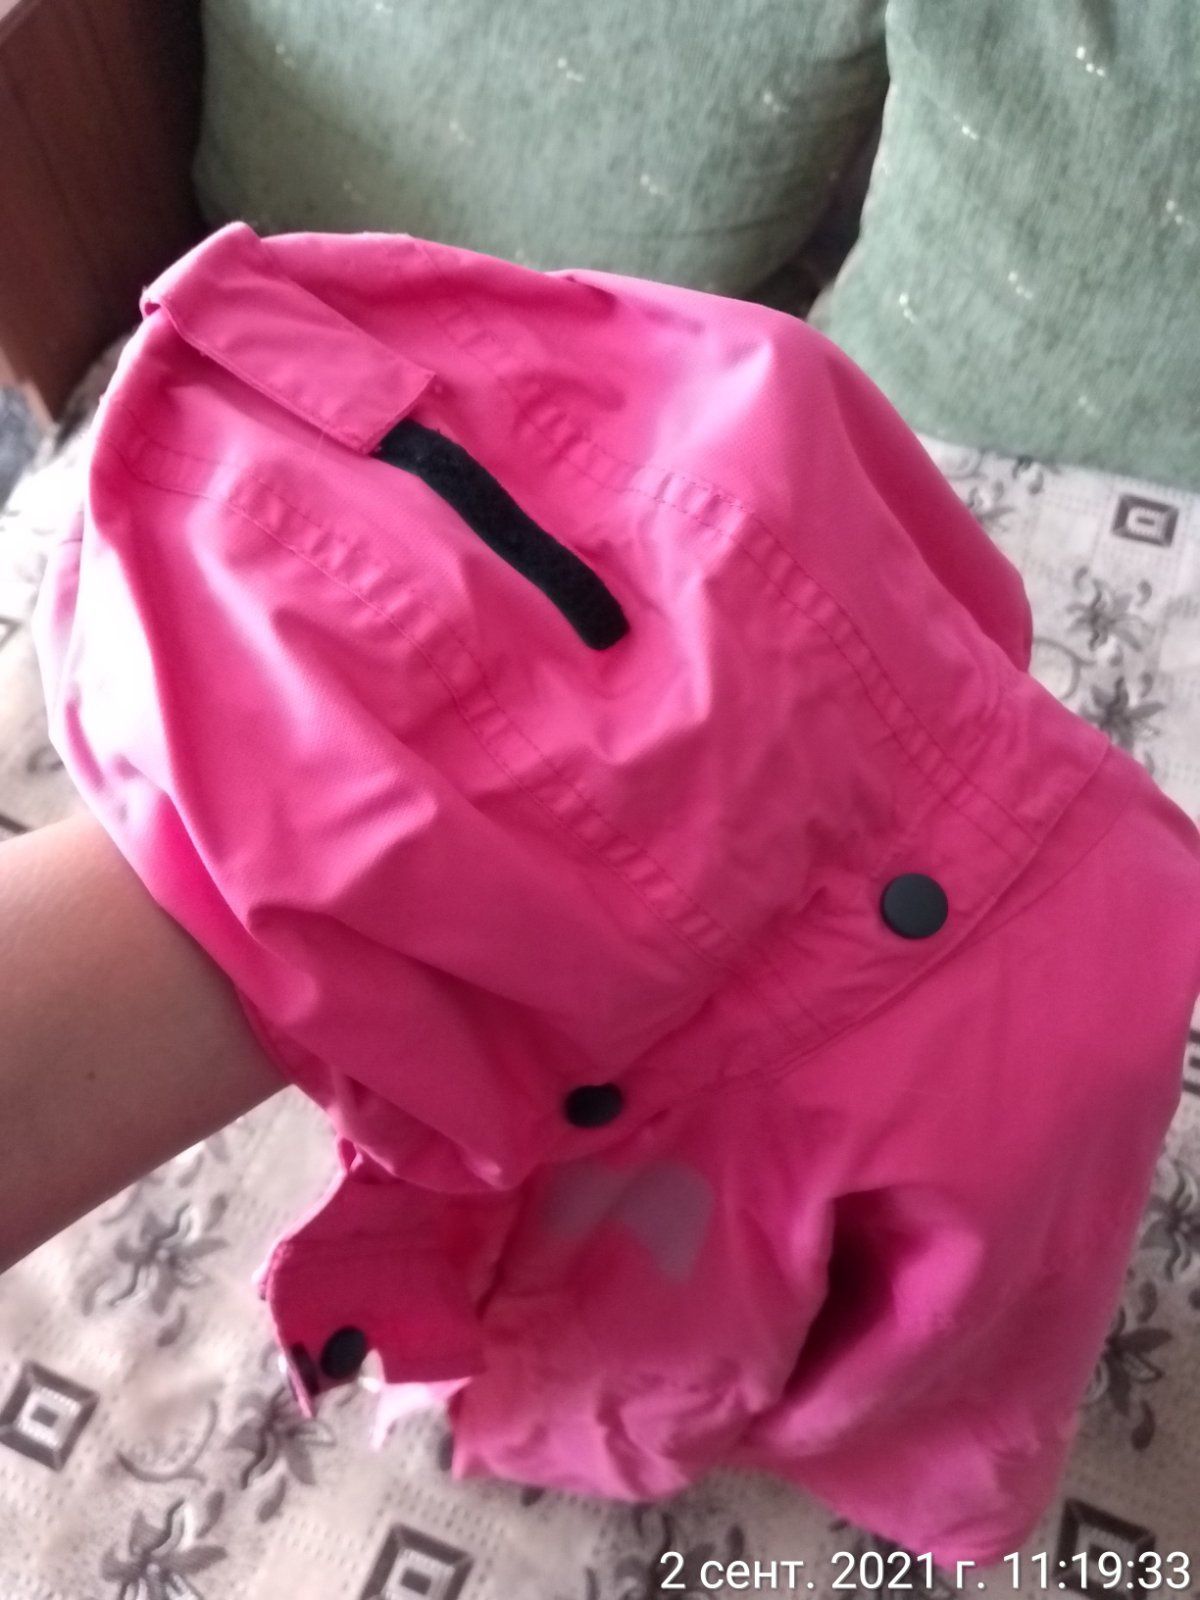 Куртка-штормовка на дівчинку рост 152